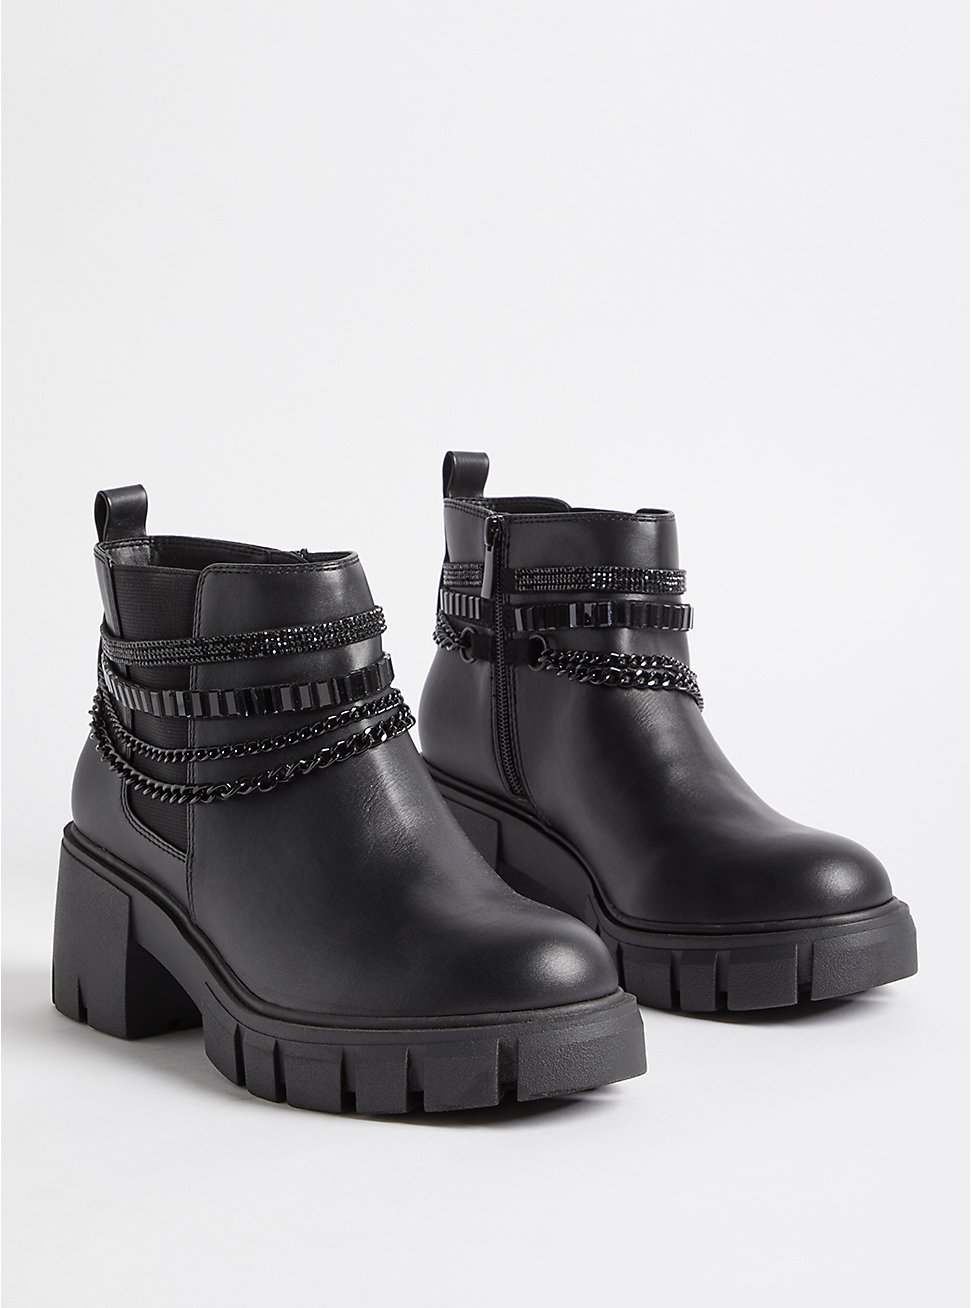 Plus Size Chain Ankle Bootie - Faux Leather Black (WW), BLACK, hi-res